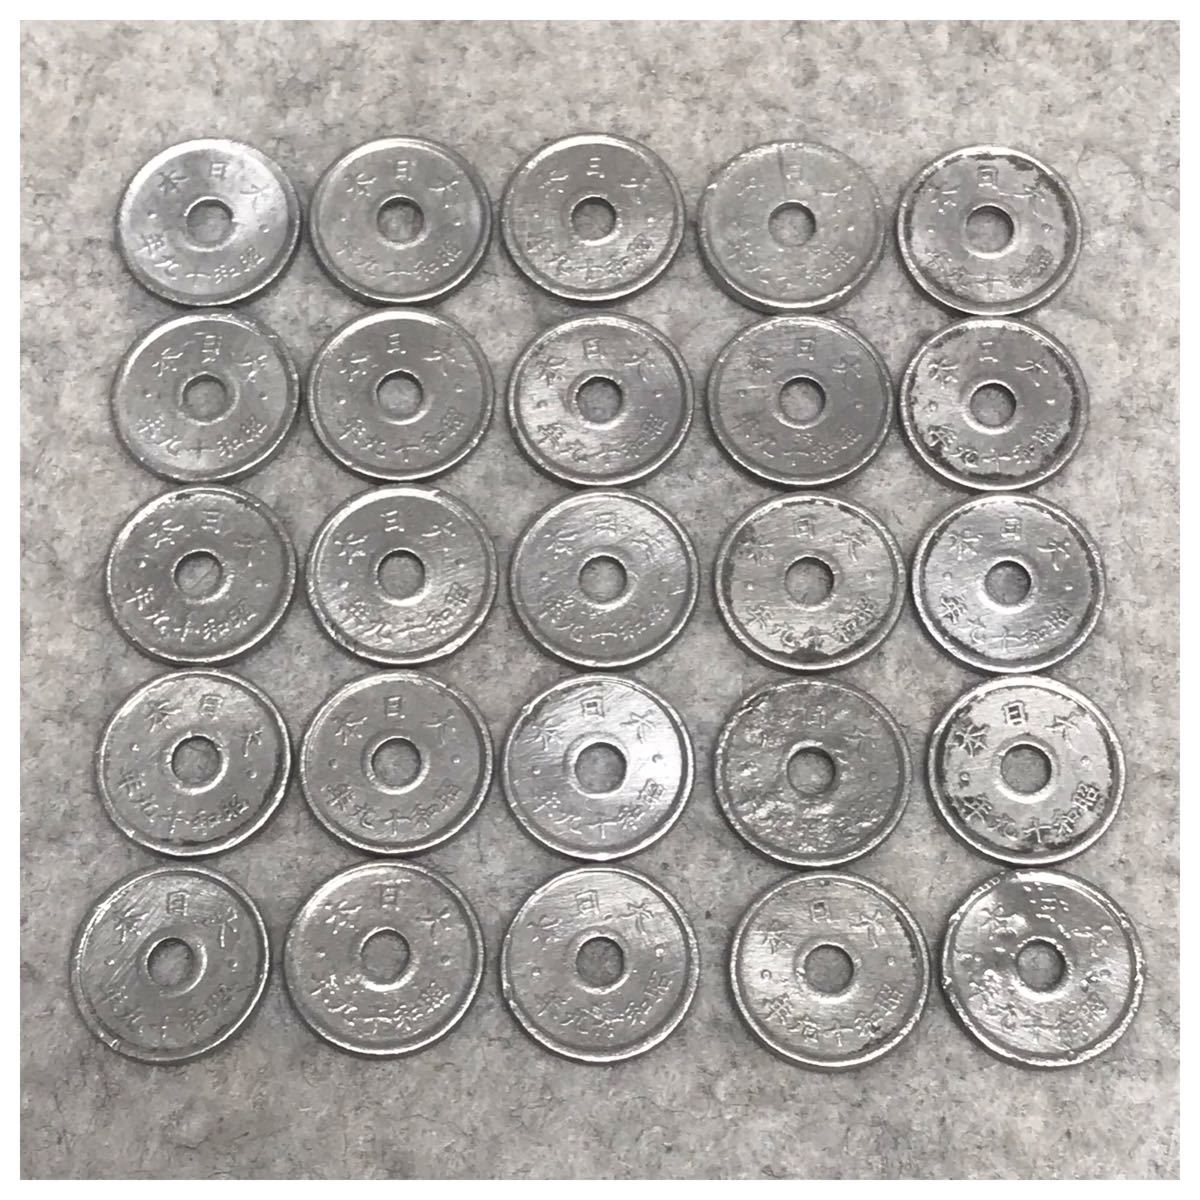 穴アキ5銭錫貨 腫れコブへゲーエラー、大へゲーエラー、小穴枠ズレエラー含む 25点セット / #0331